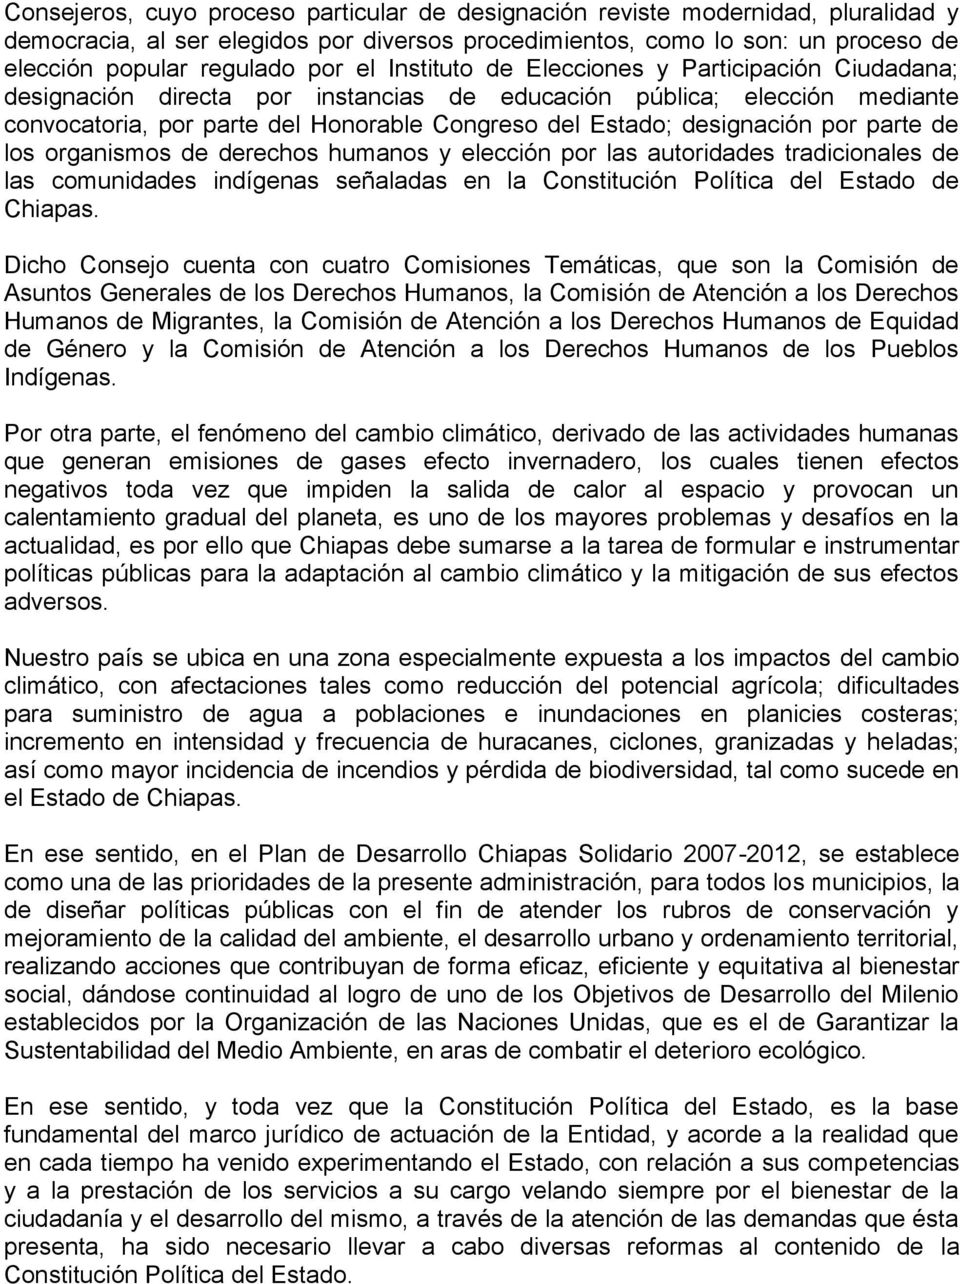 por parte de los organismos de derechos humanos y elección por las autoridades tradicionales de las comunidades indígenas señaladas en la Constitución Política del Estado de Chiapas.